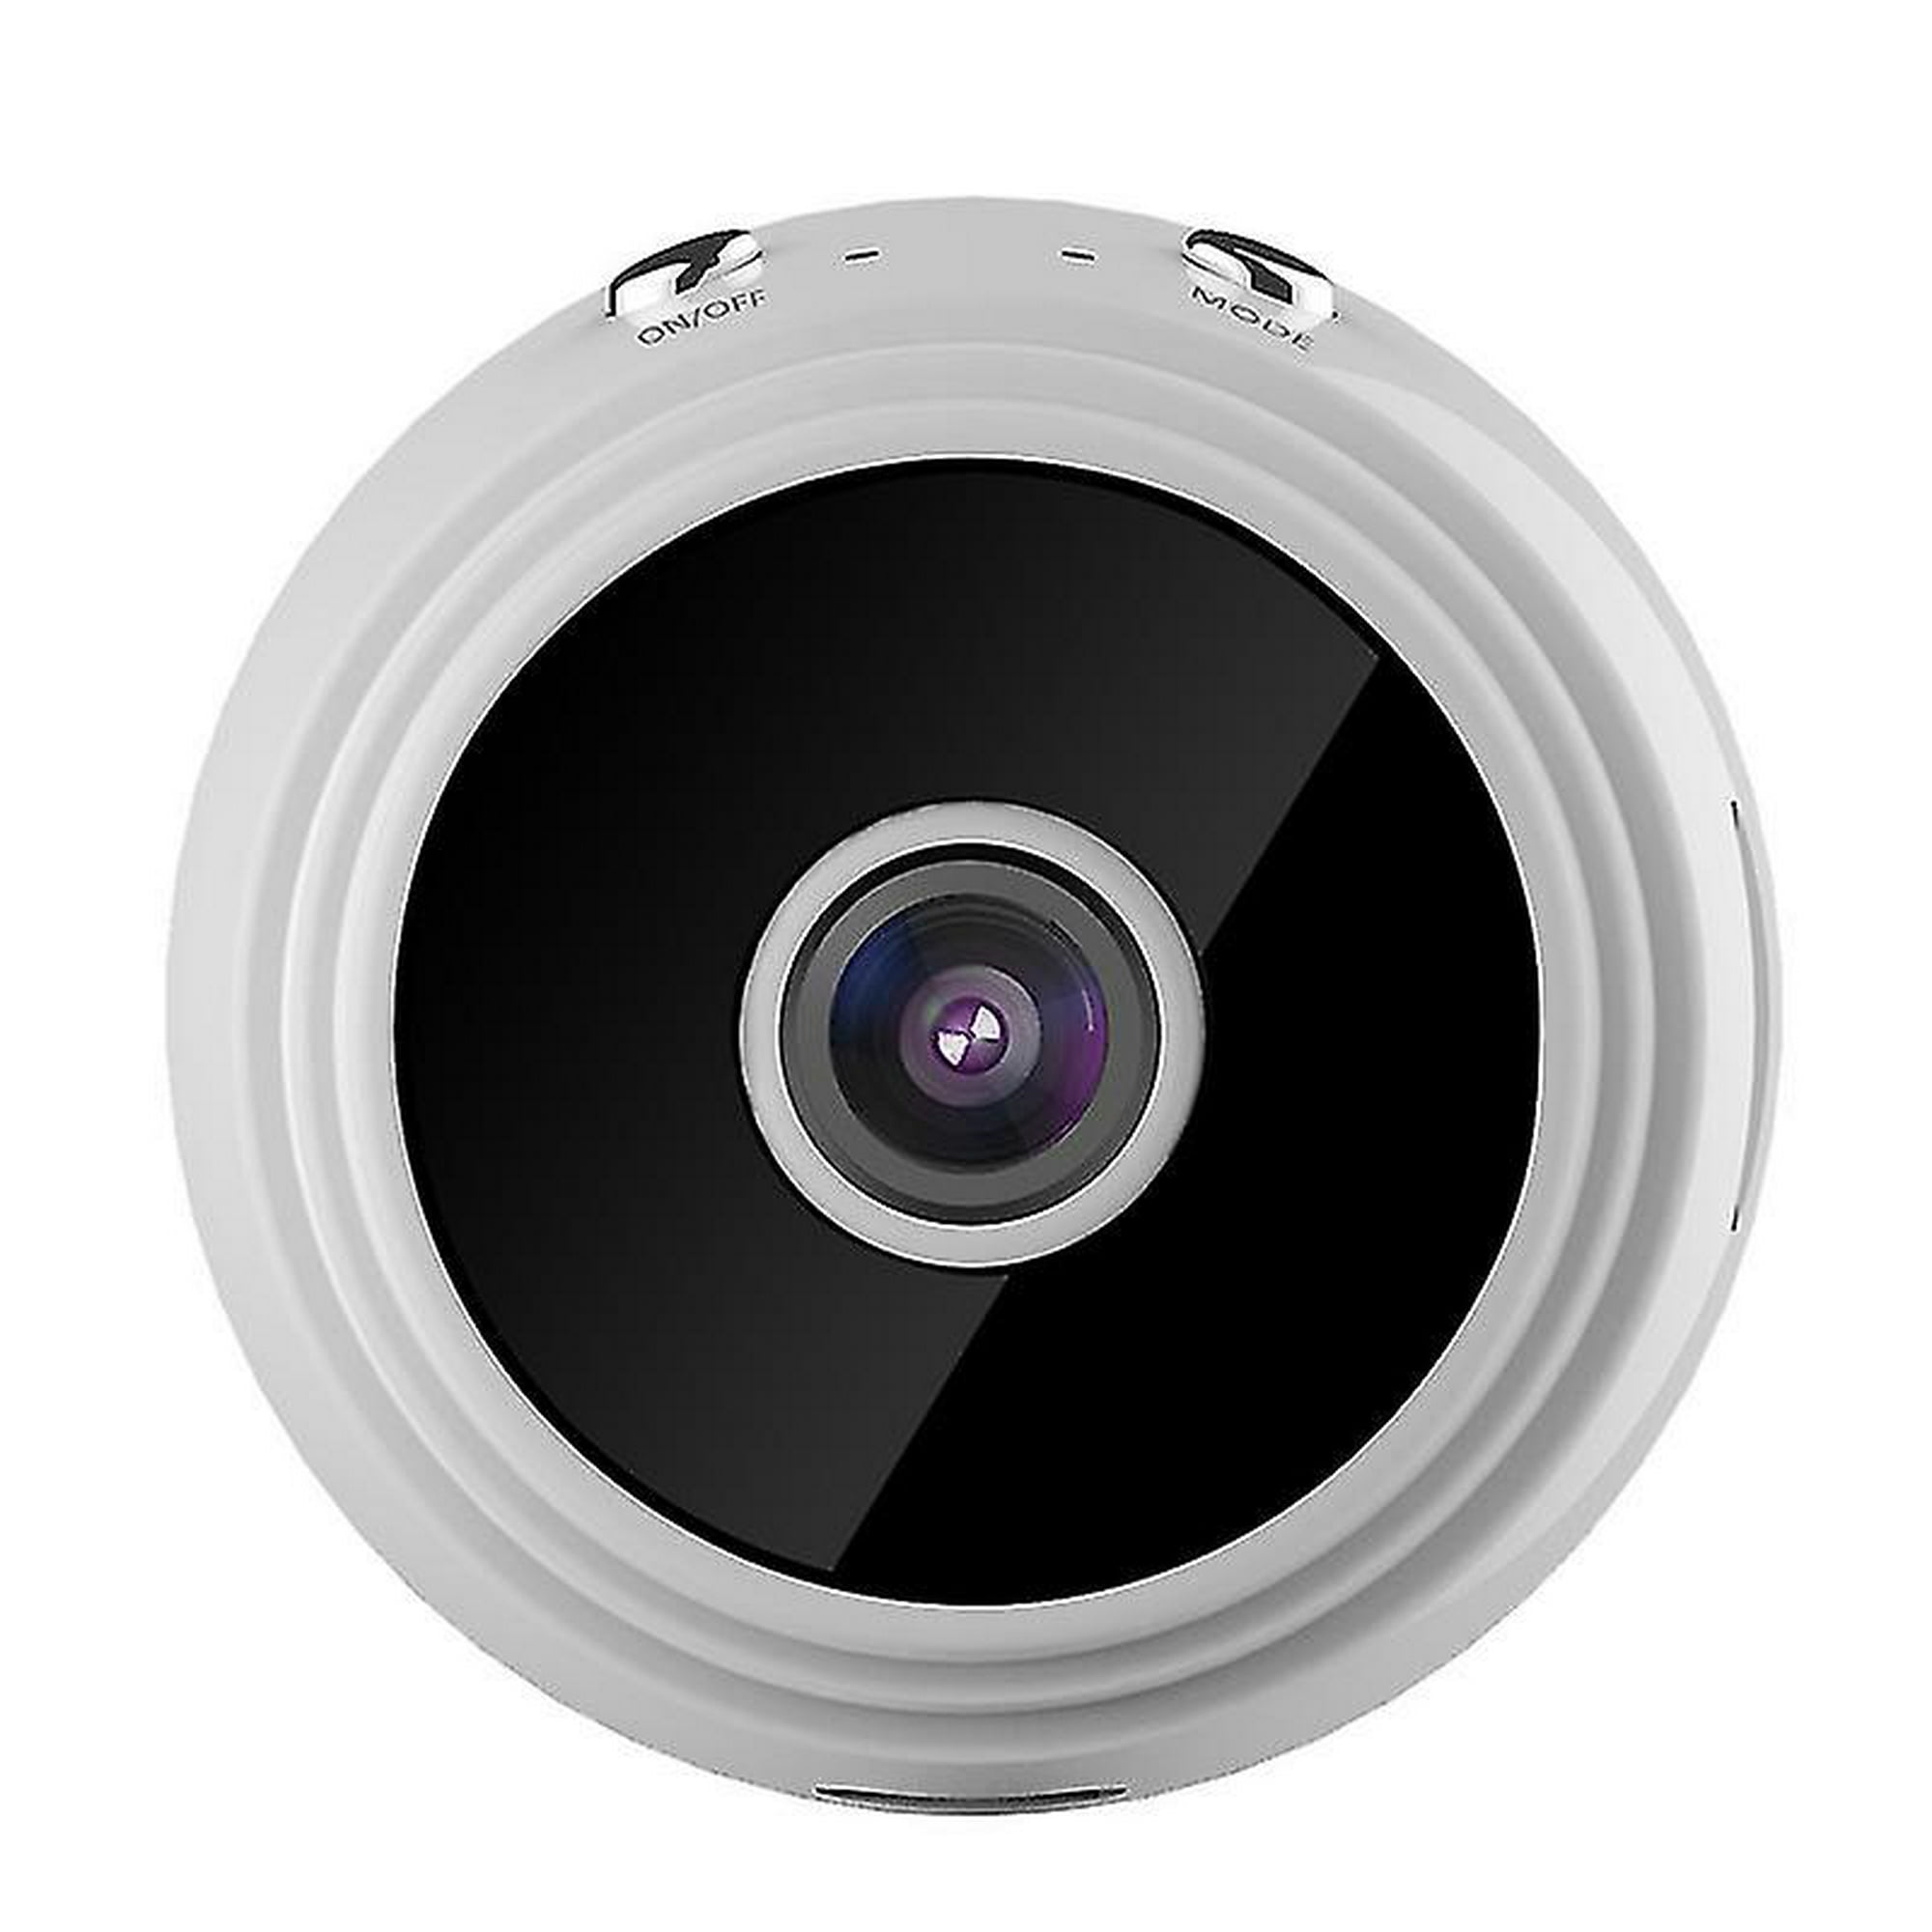 2021 Nueva versión Mini cámara oculta WiFi, cámara espía con audio